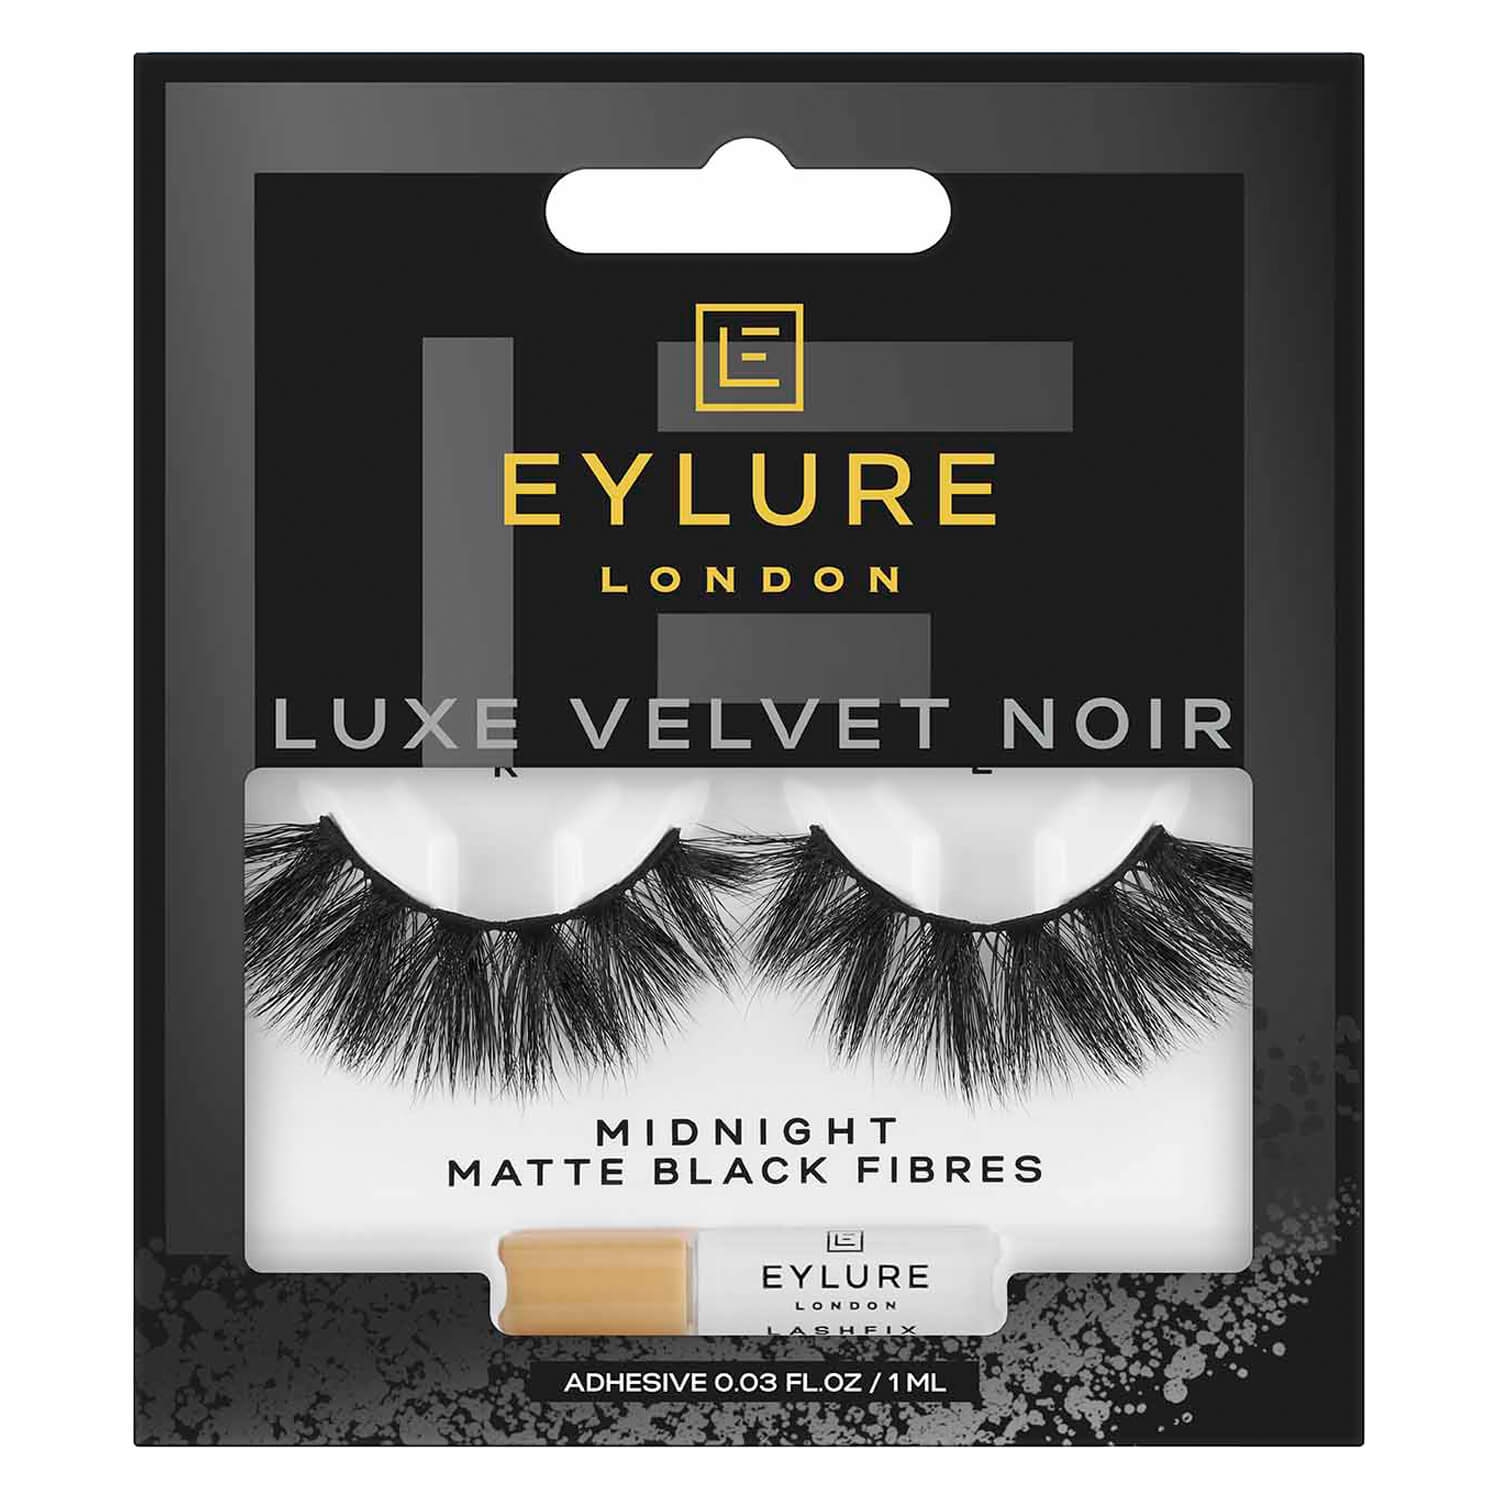 Produktbild von EYLURE - Luxe Velvet Noir Midnight